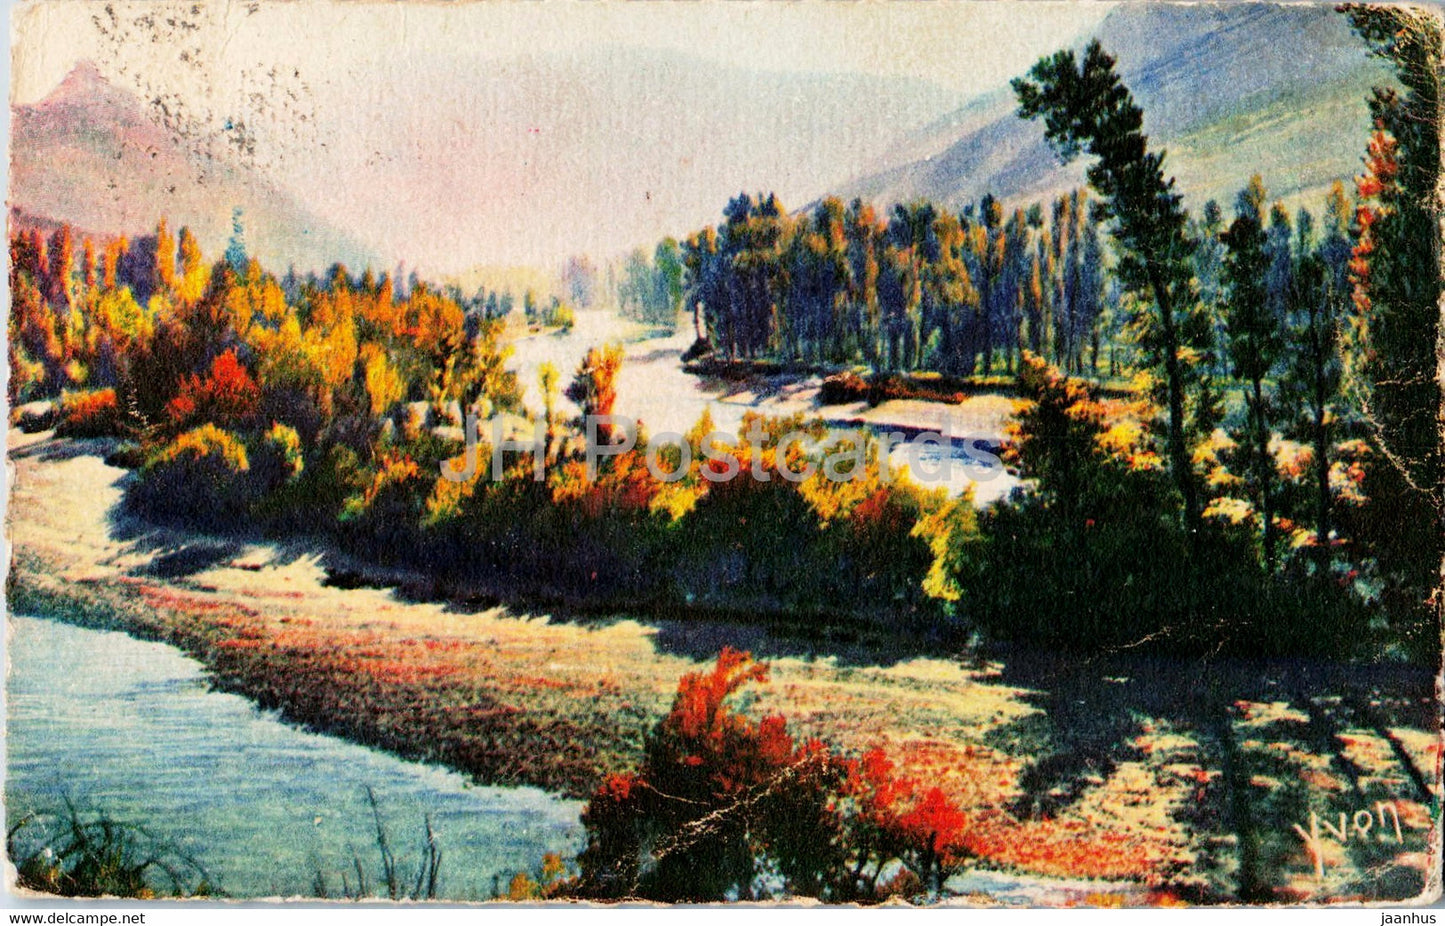 Gorges du Tarn - Entree des Gorges au Rozier - La Douce France - 3 - old postcard - France - used - JH Postcards